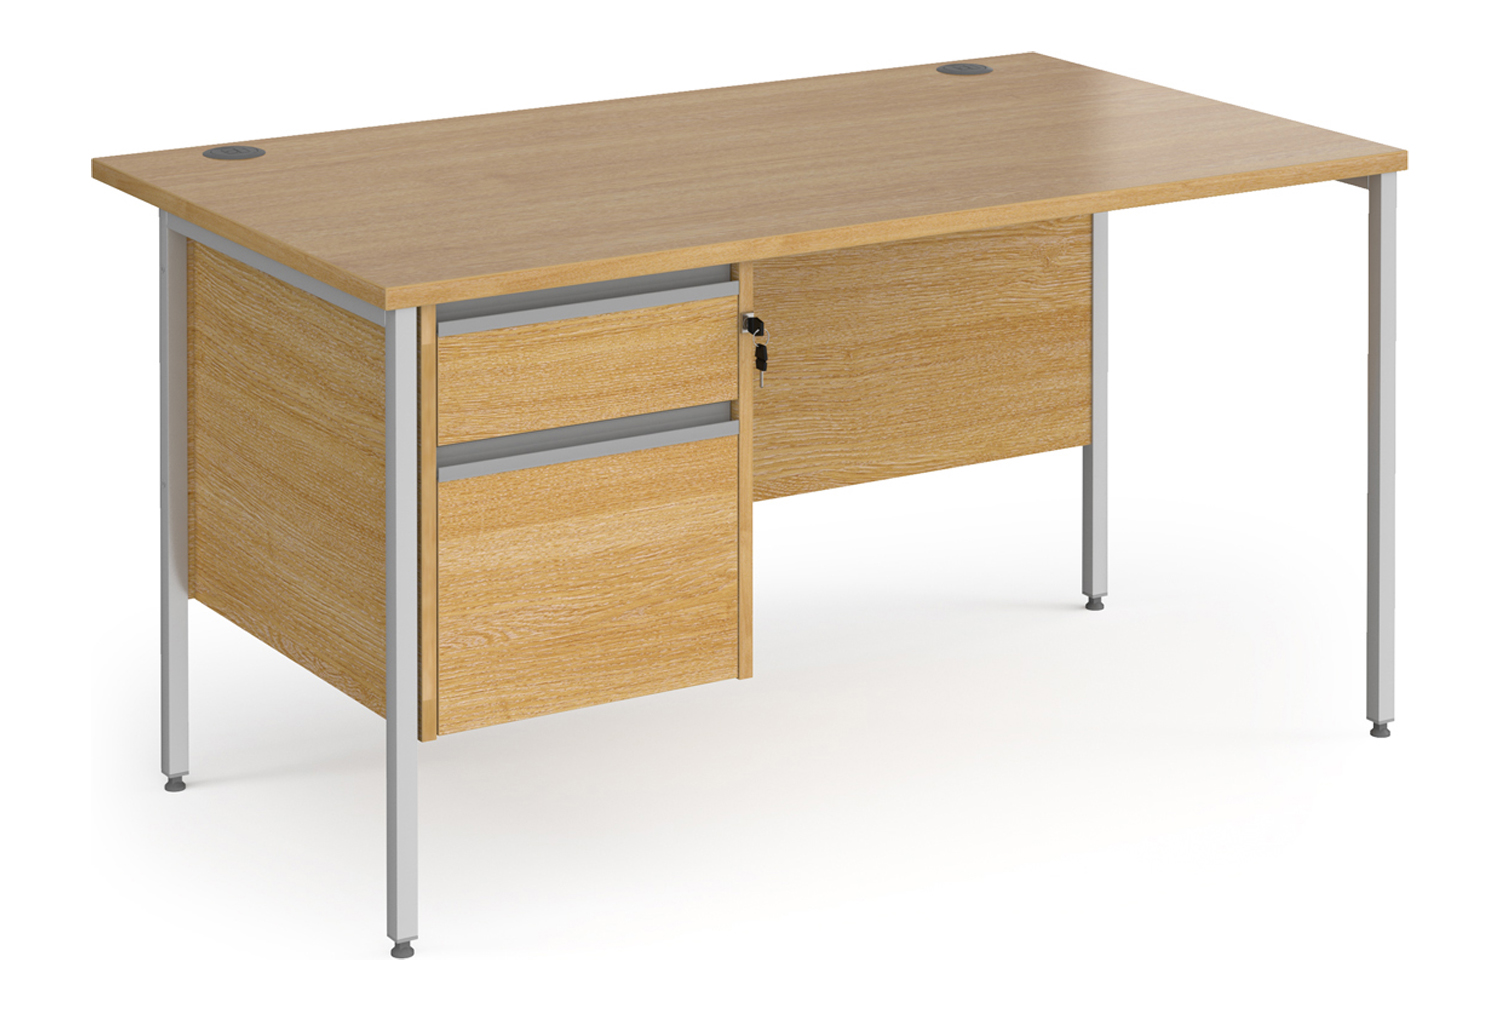 Value Line Classic+ Rectangular H-Leg Office Desk 2 Drawers (Silver Leg), 140wx80dx73h (cm), Oak, Fully Installed